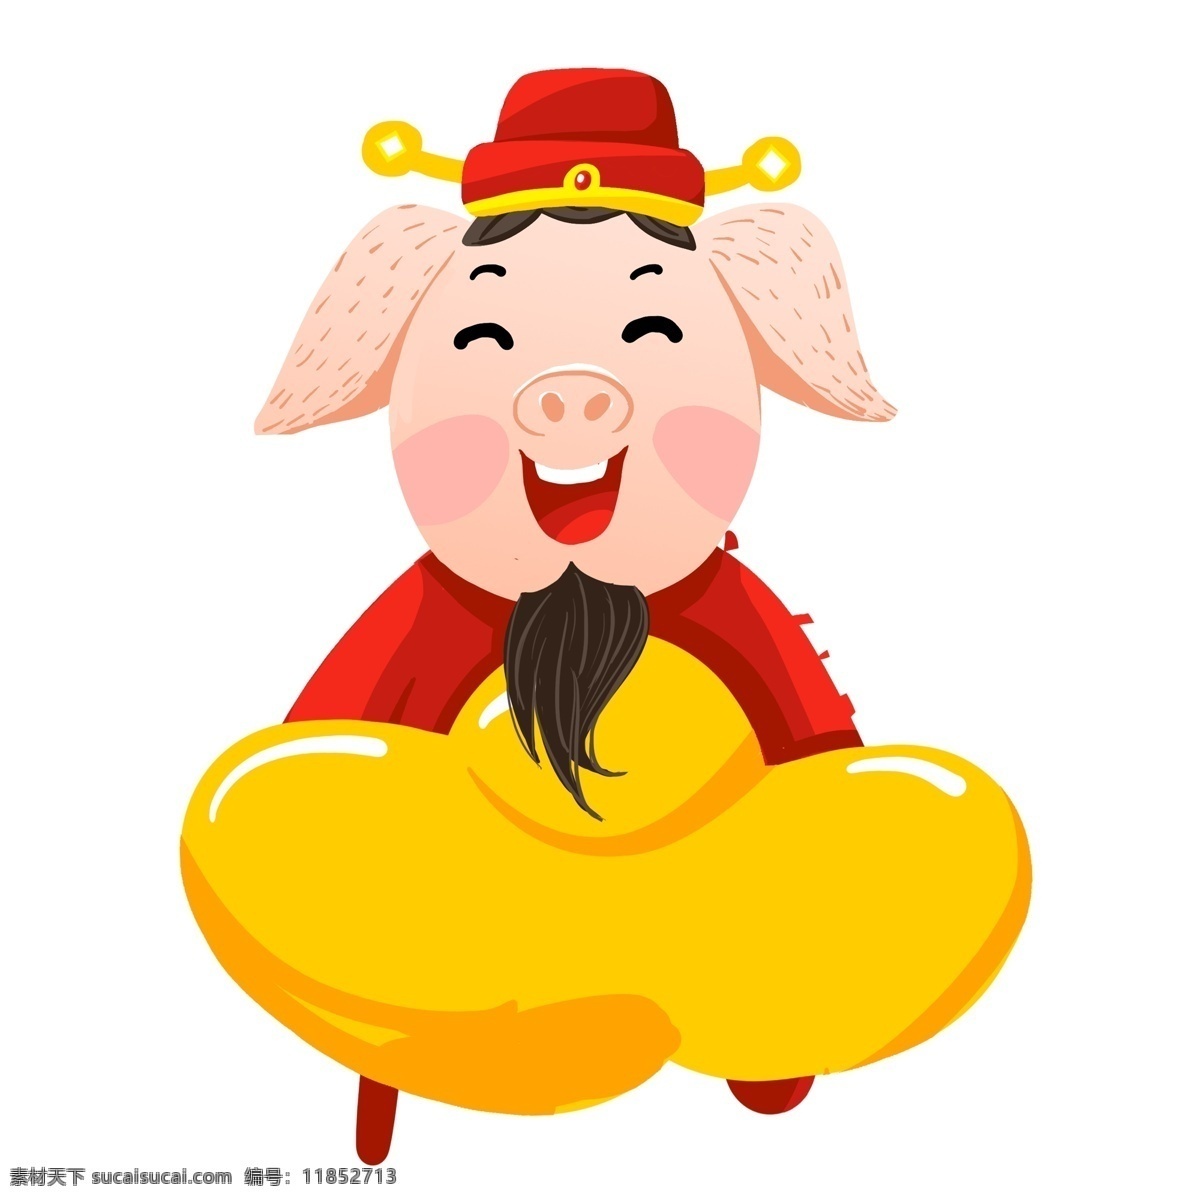 抱 金元宝 小 猪 财神 卡通 喜庆 插画 小猪 春节元素 2019年 新年 猪年 小猪形象 猪年形象 开心 高兴